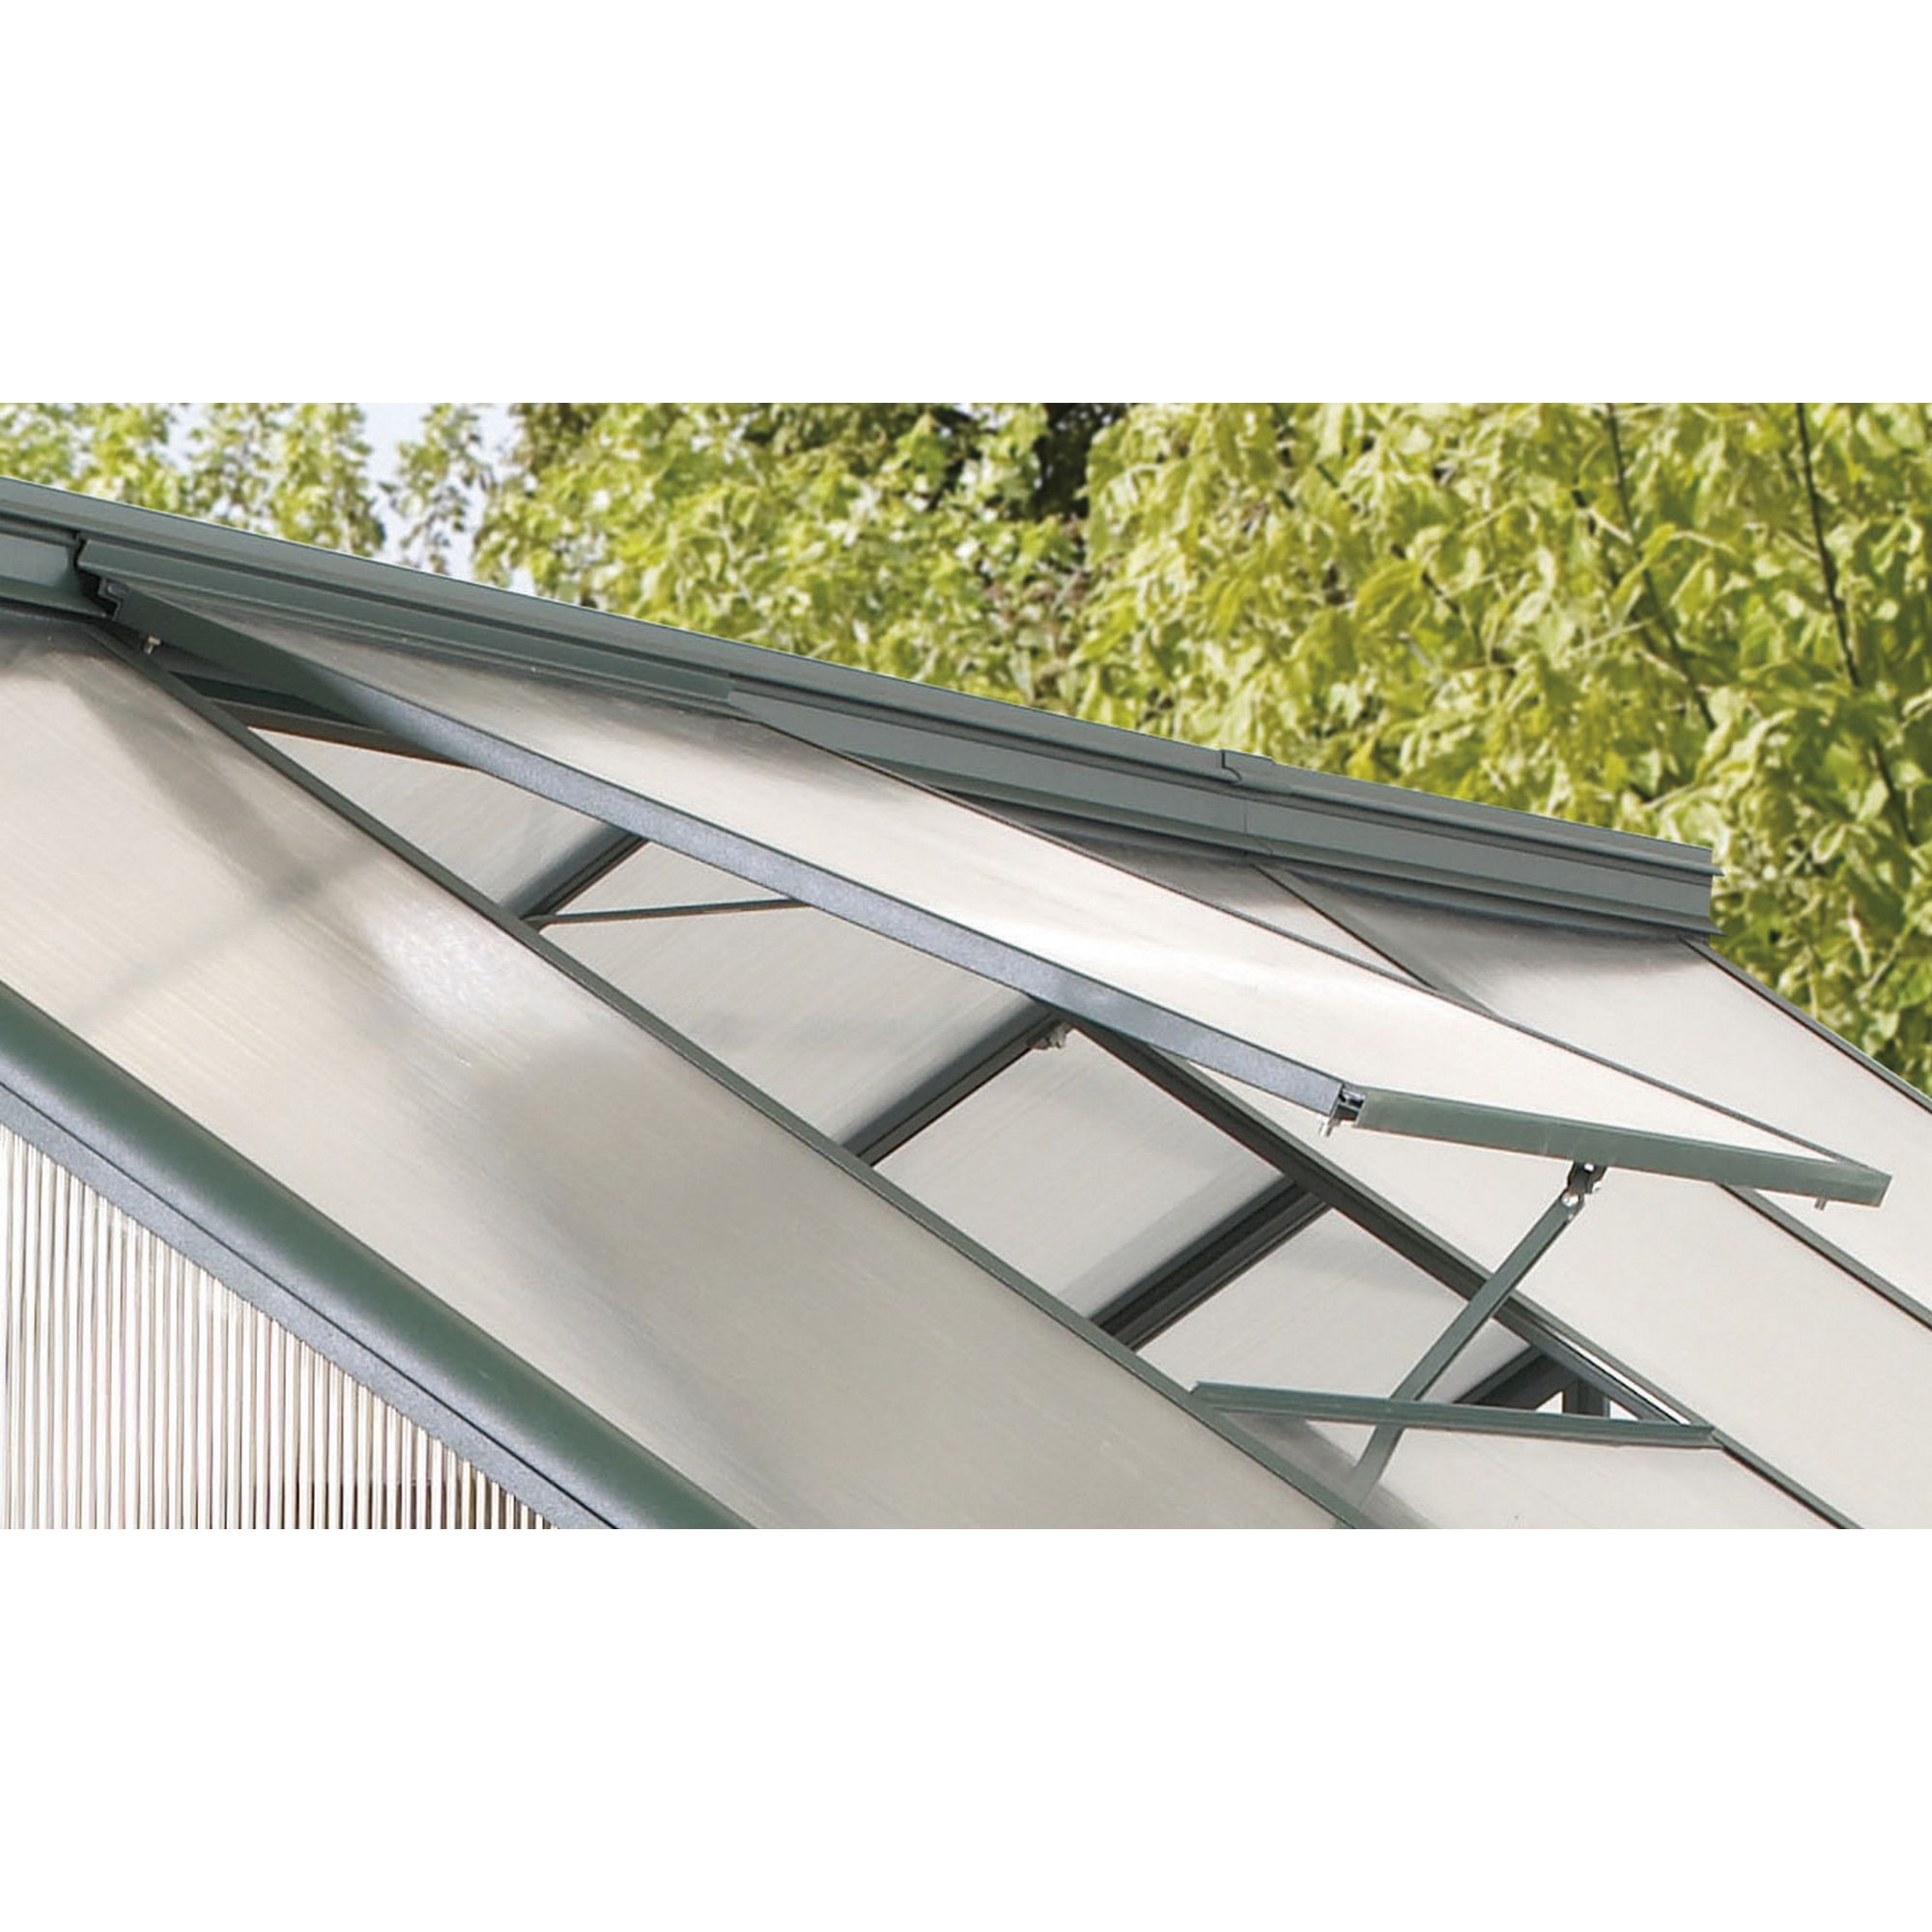 Dachfenster 'Triton' ohne Verglasung, smaragd + product picture